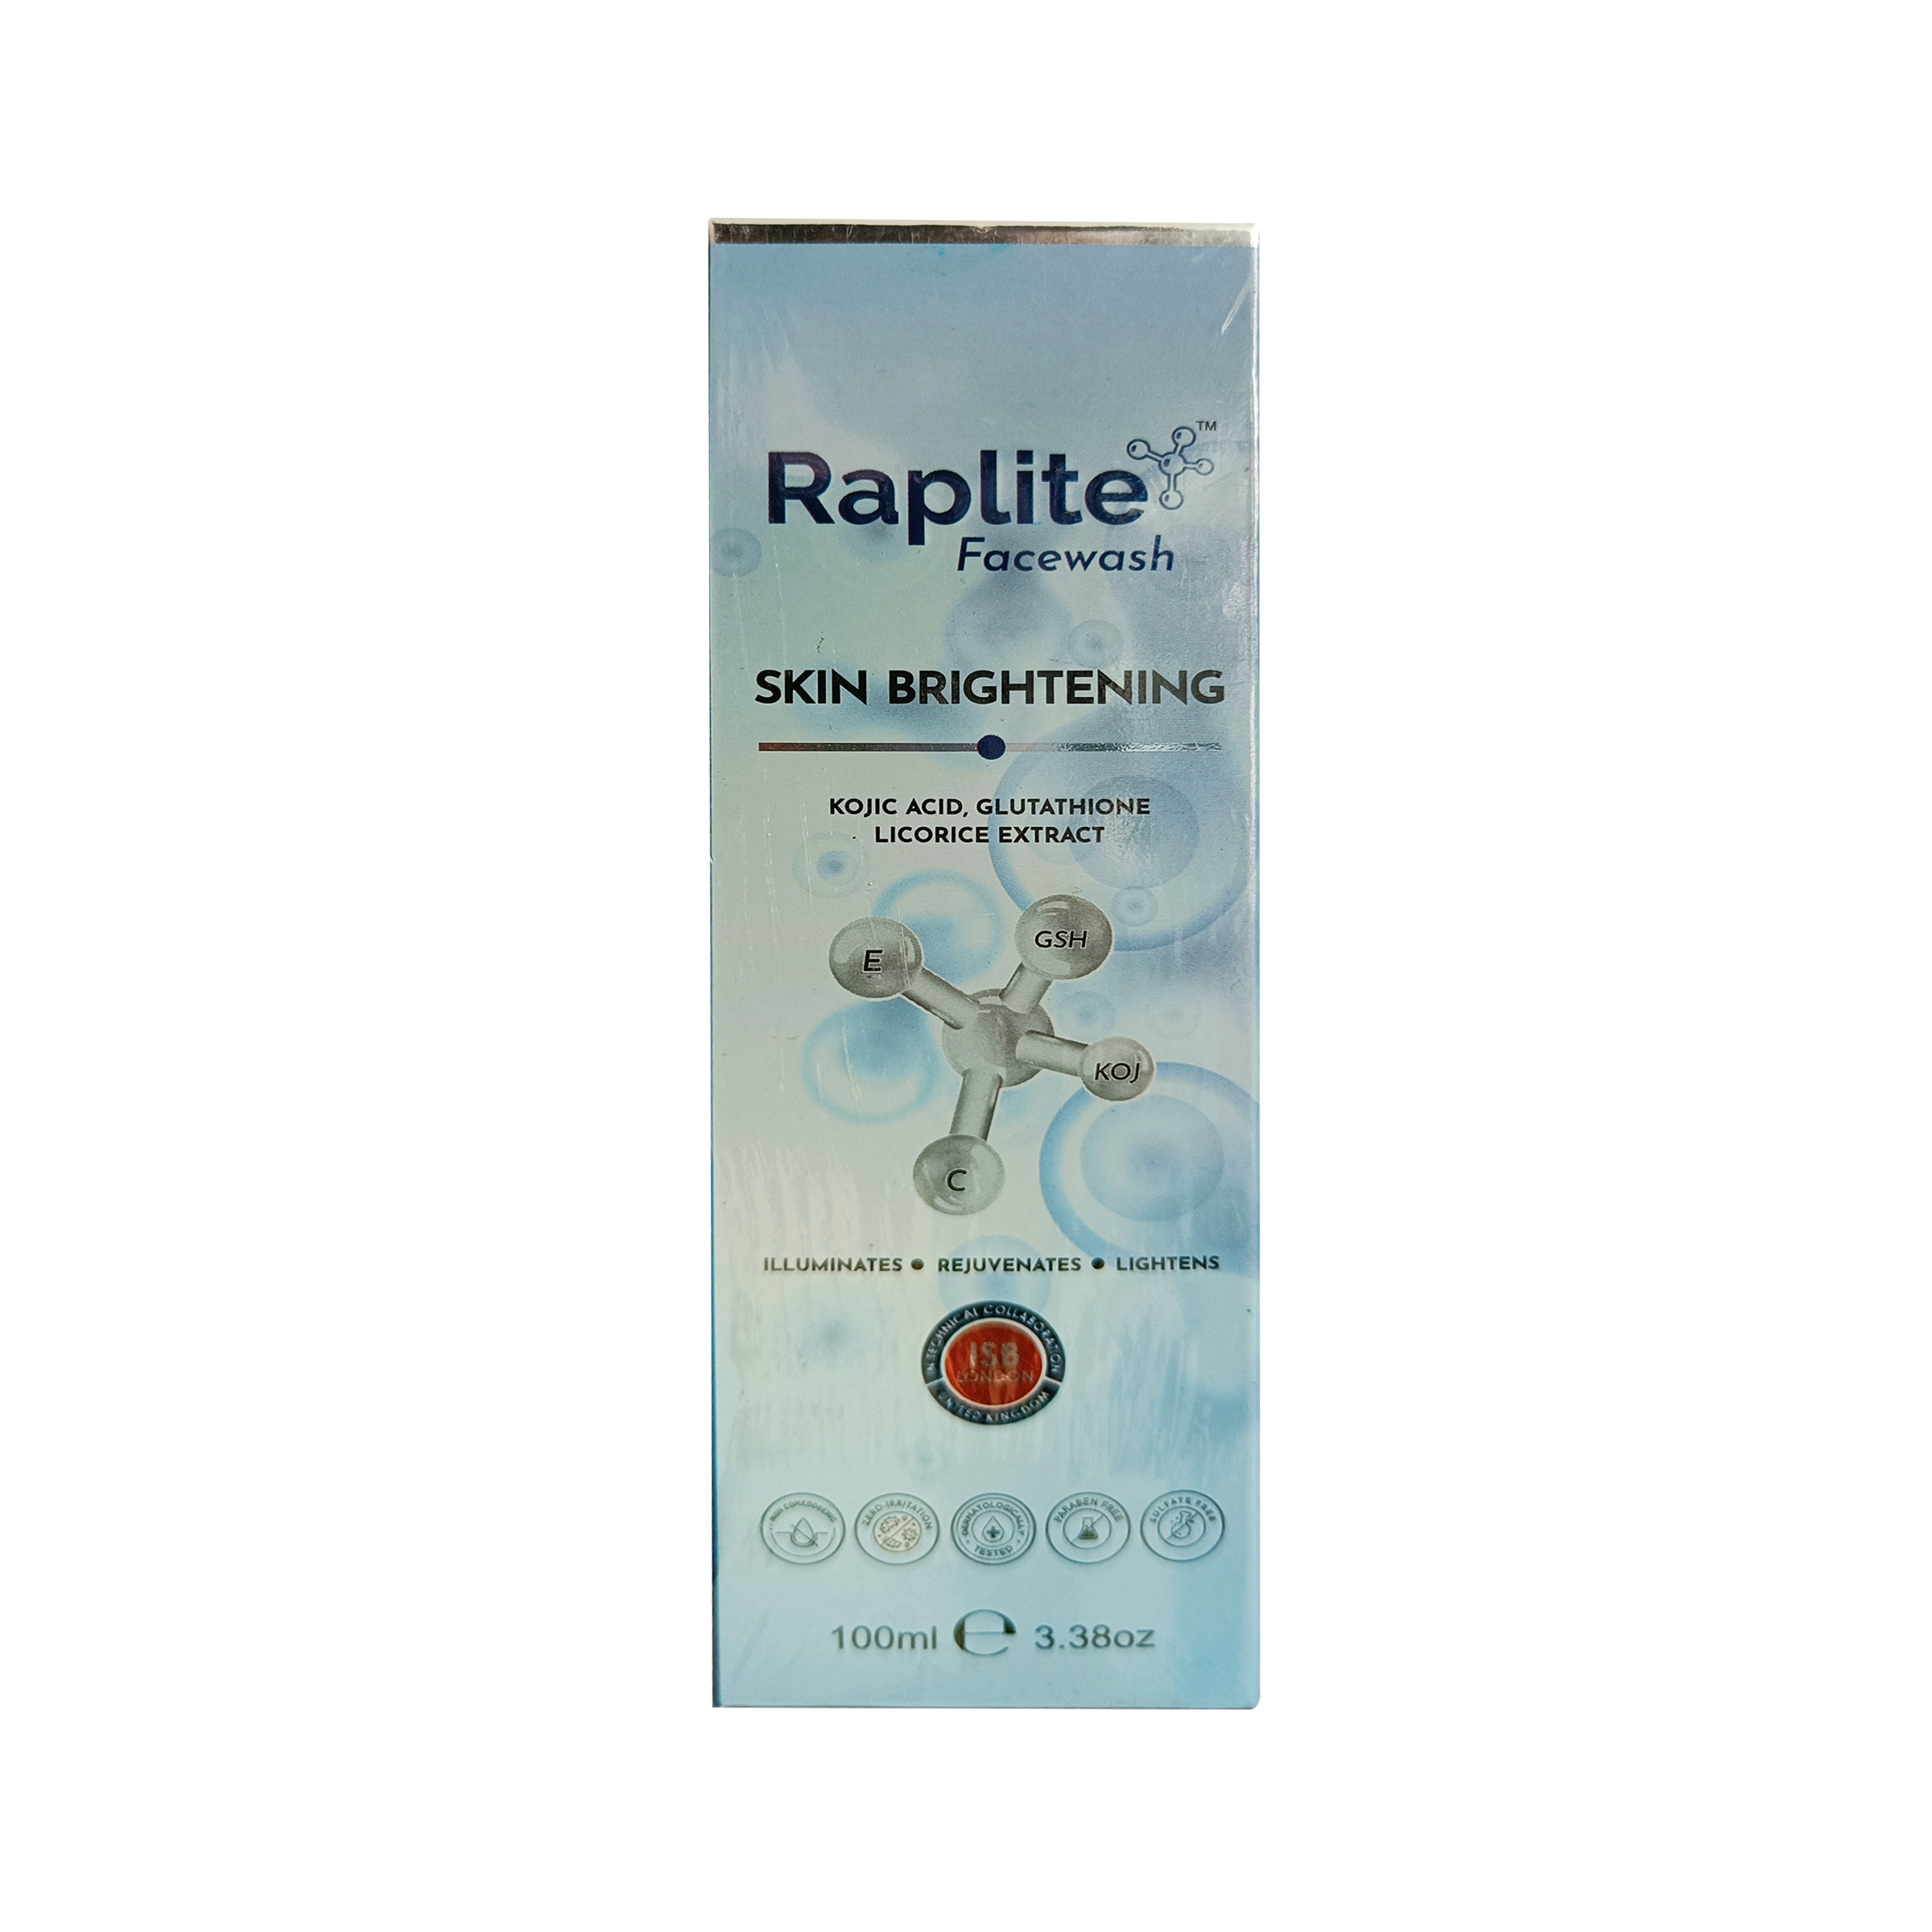 Raplite Skin Brightening Facewash 100ml